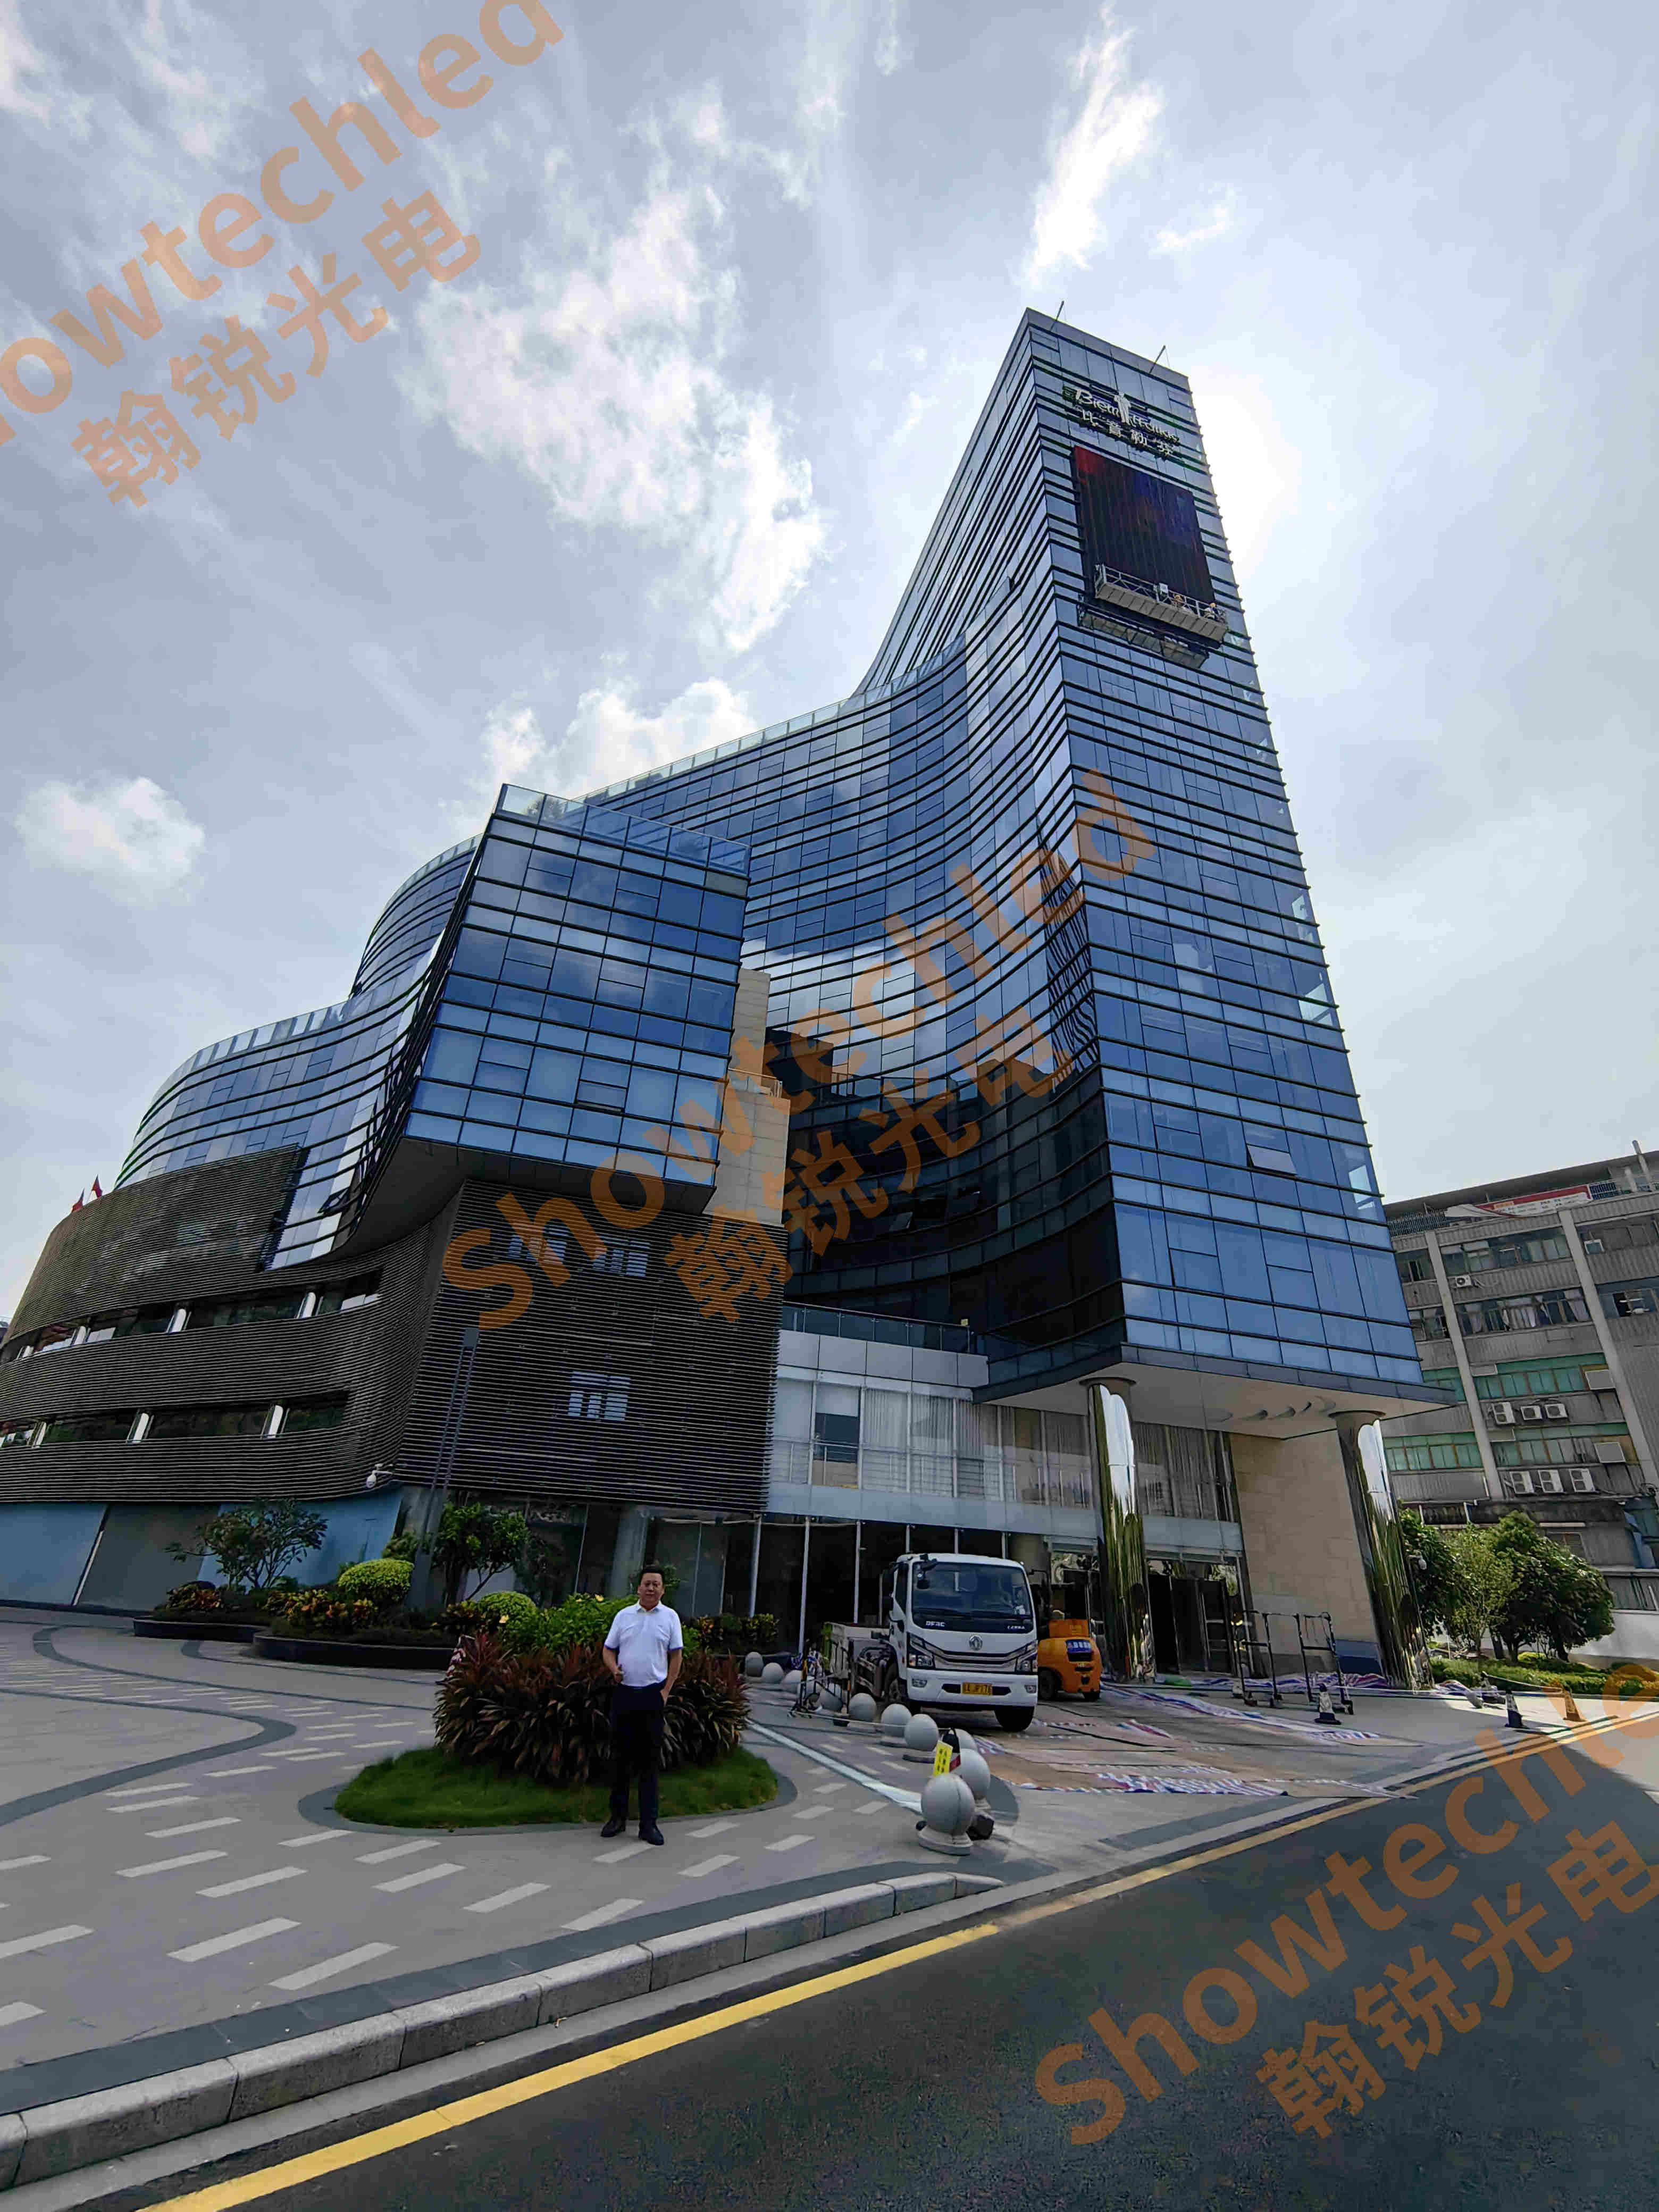 Еще одна последняя история успеха Showtechled: открытый сетчатый экран площадью 160 м&sup2; в здании штаб-квартиры Гуанчжоу Biyinlefen